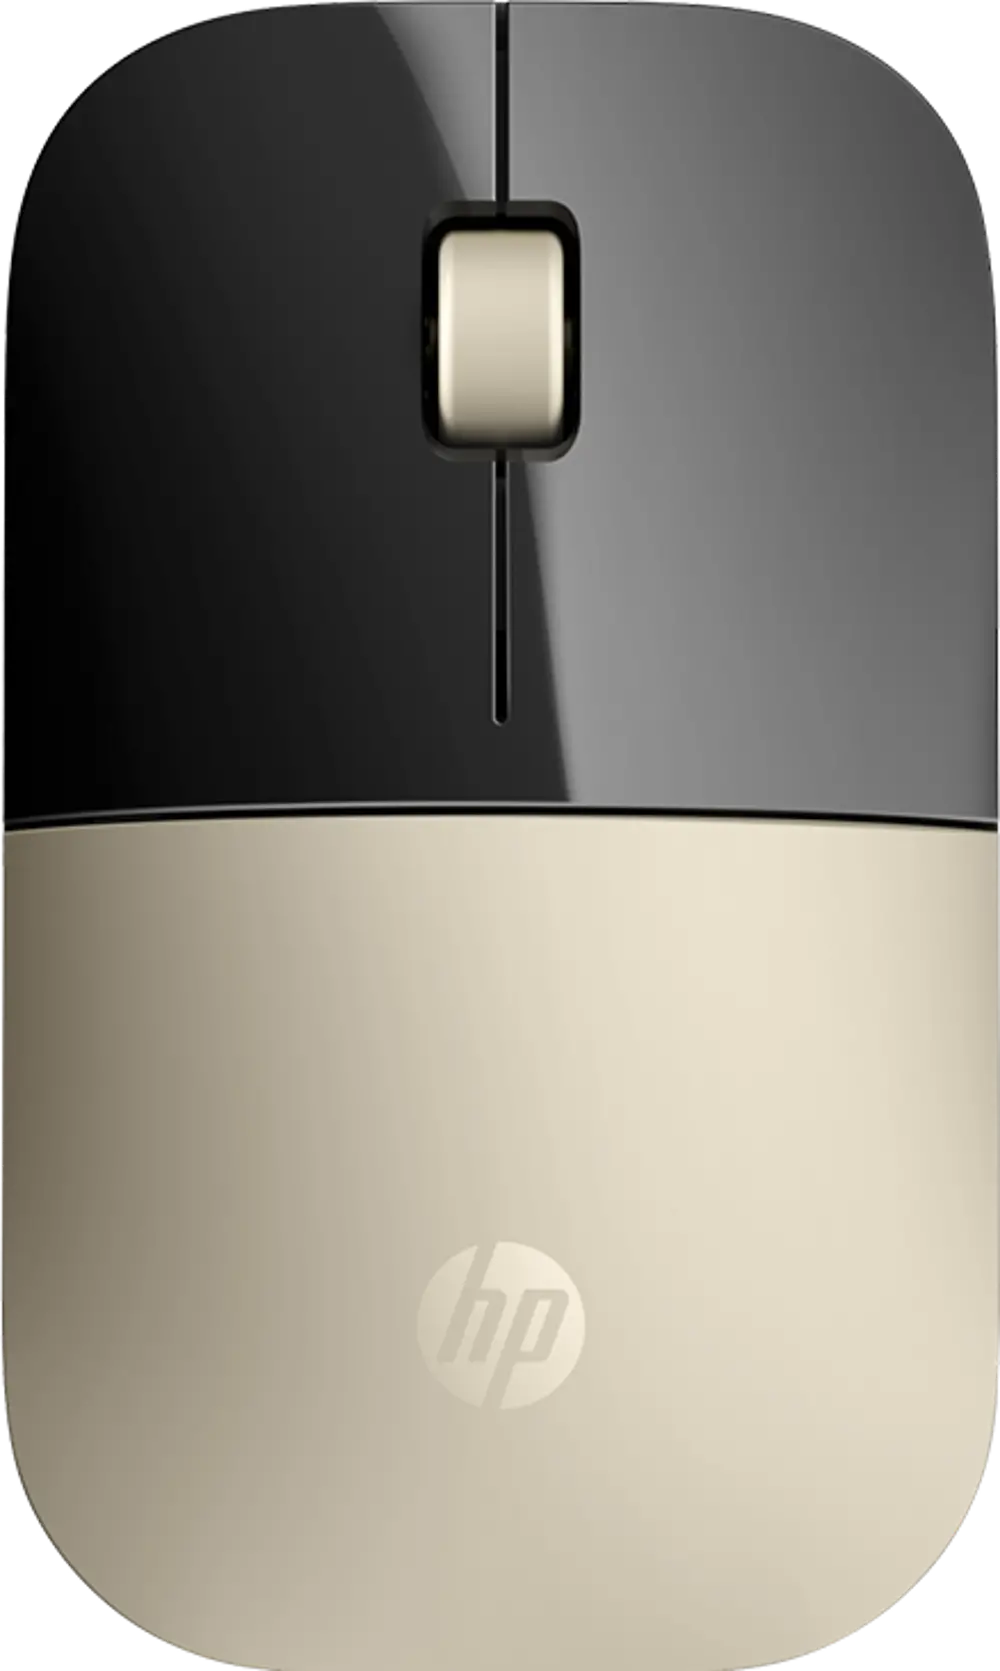 HP Z3700 GOLD WIRELESS MOUSE HP Z3700 Gold Wireless Mouse-1